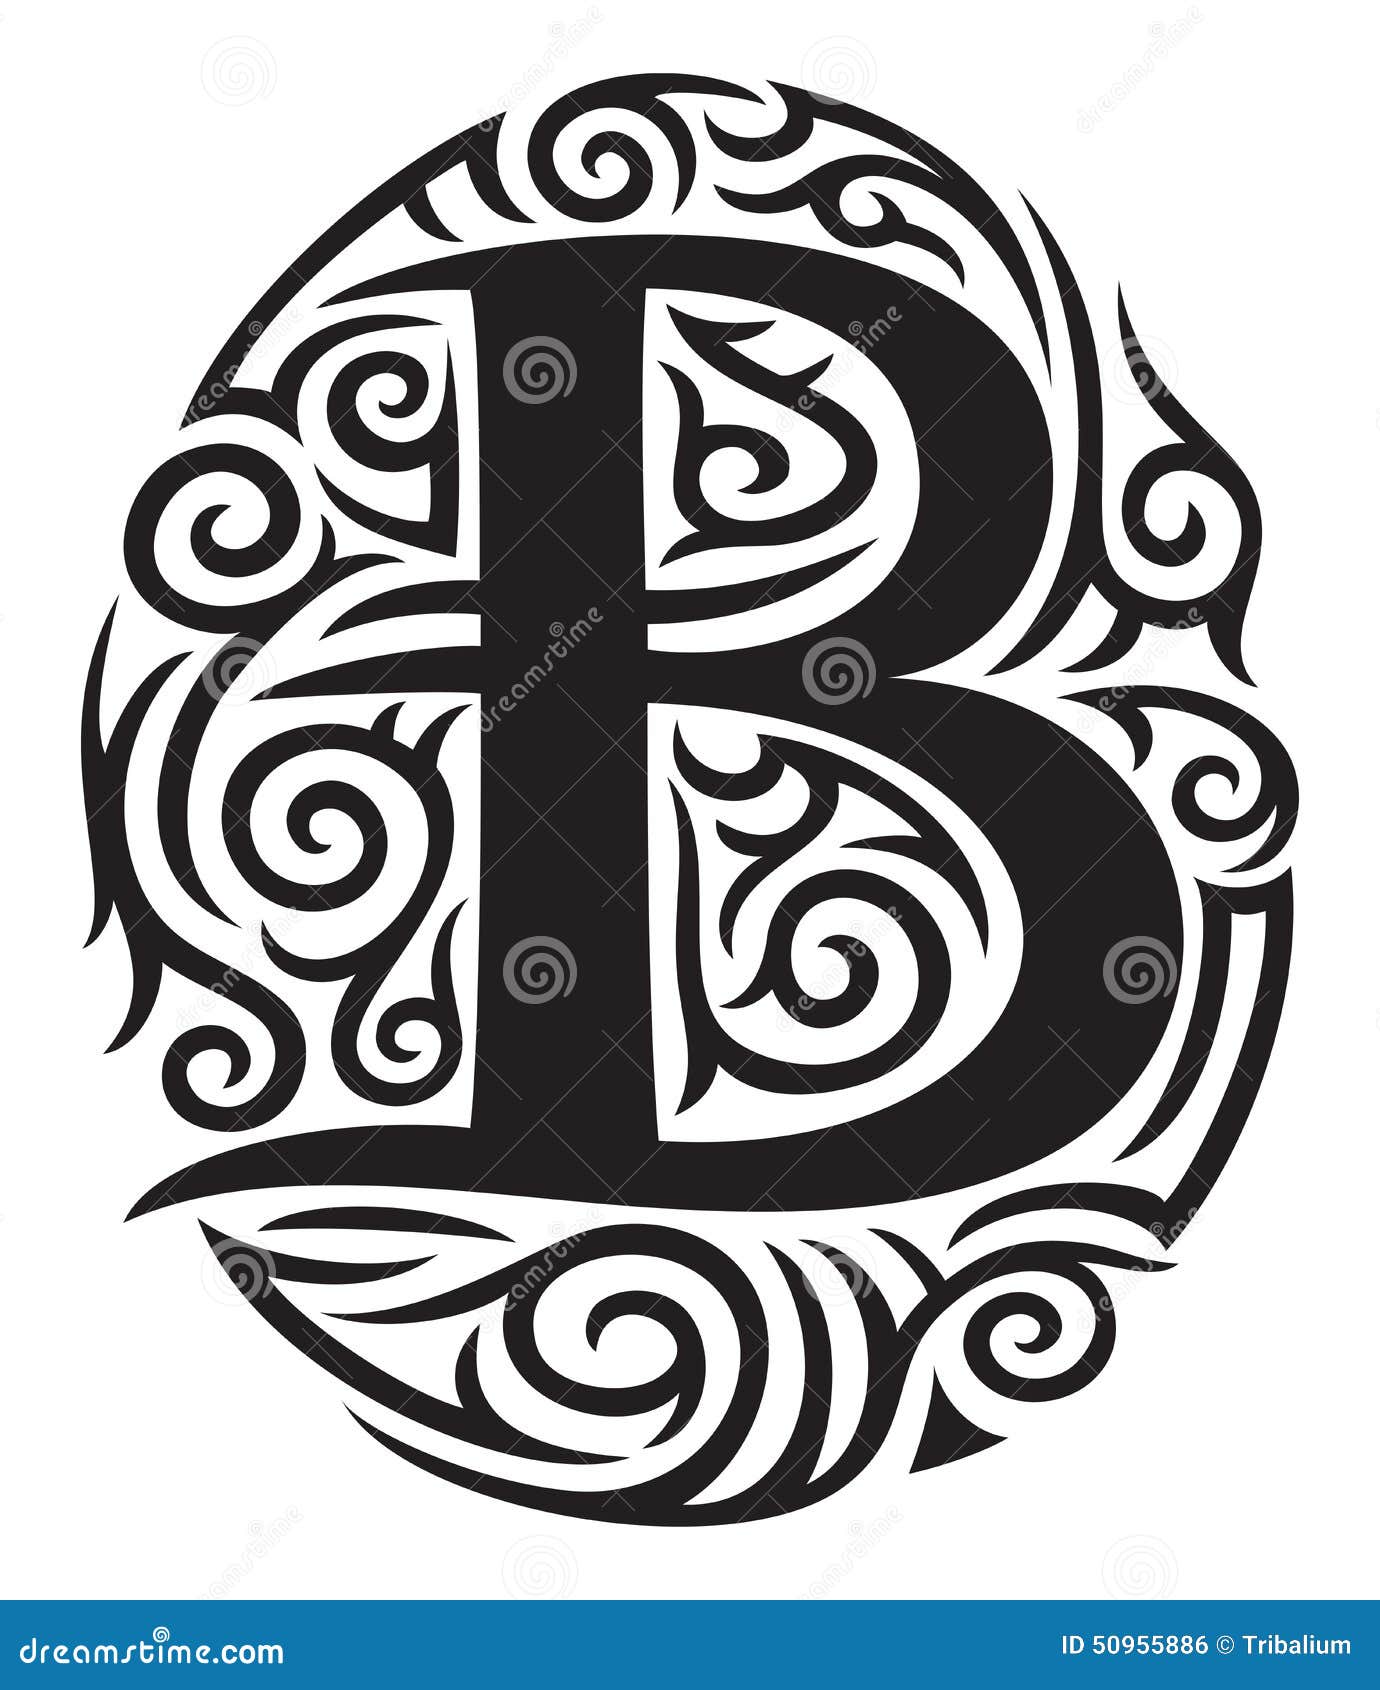 tribal letter b tattoo designs